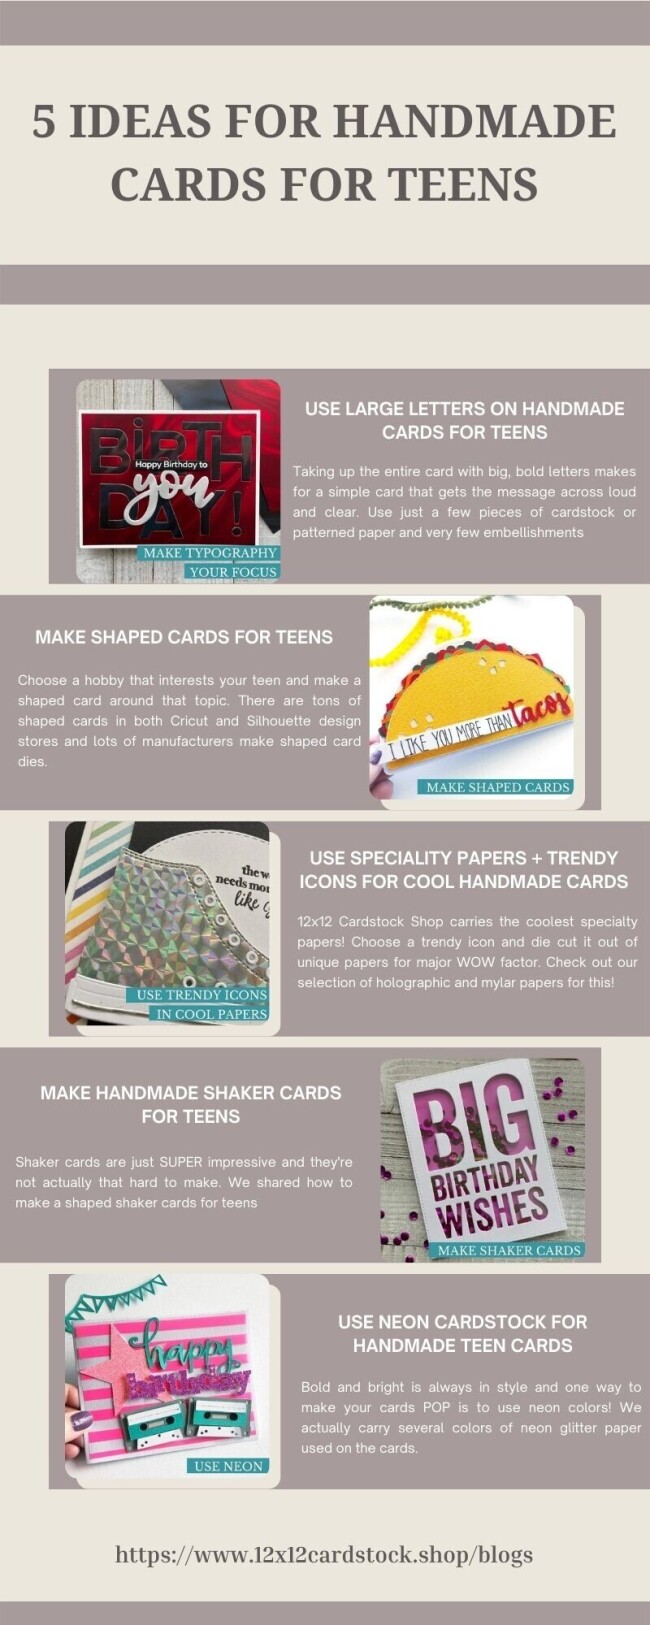 5-IDEAS-FOR-HANDMADE-CARDS-FOR-TEENScf46fdba3672f8a4.jpg